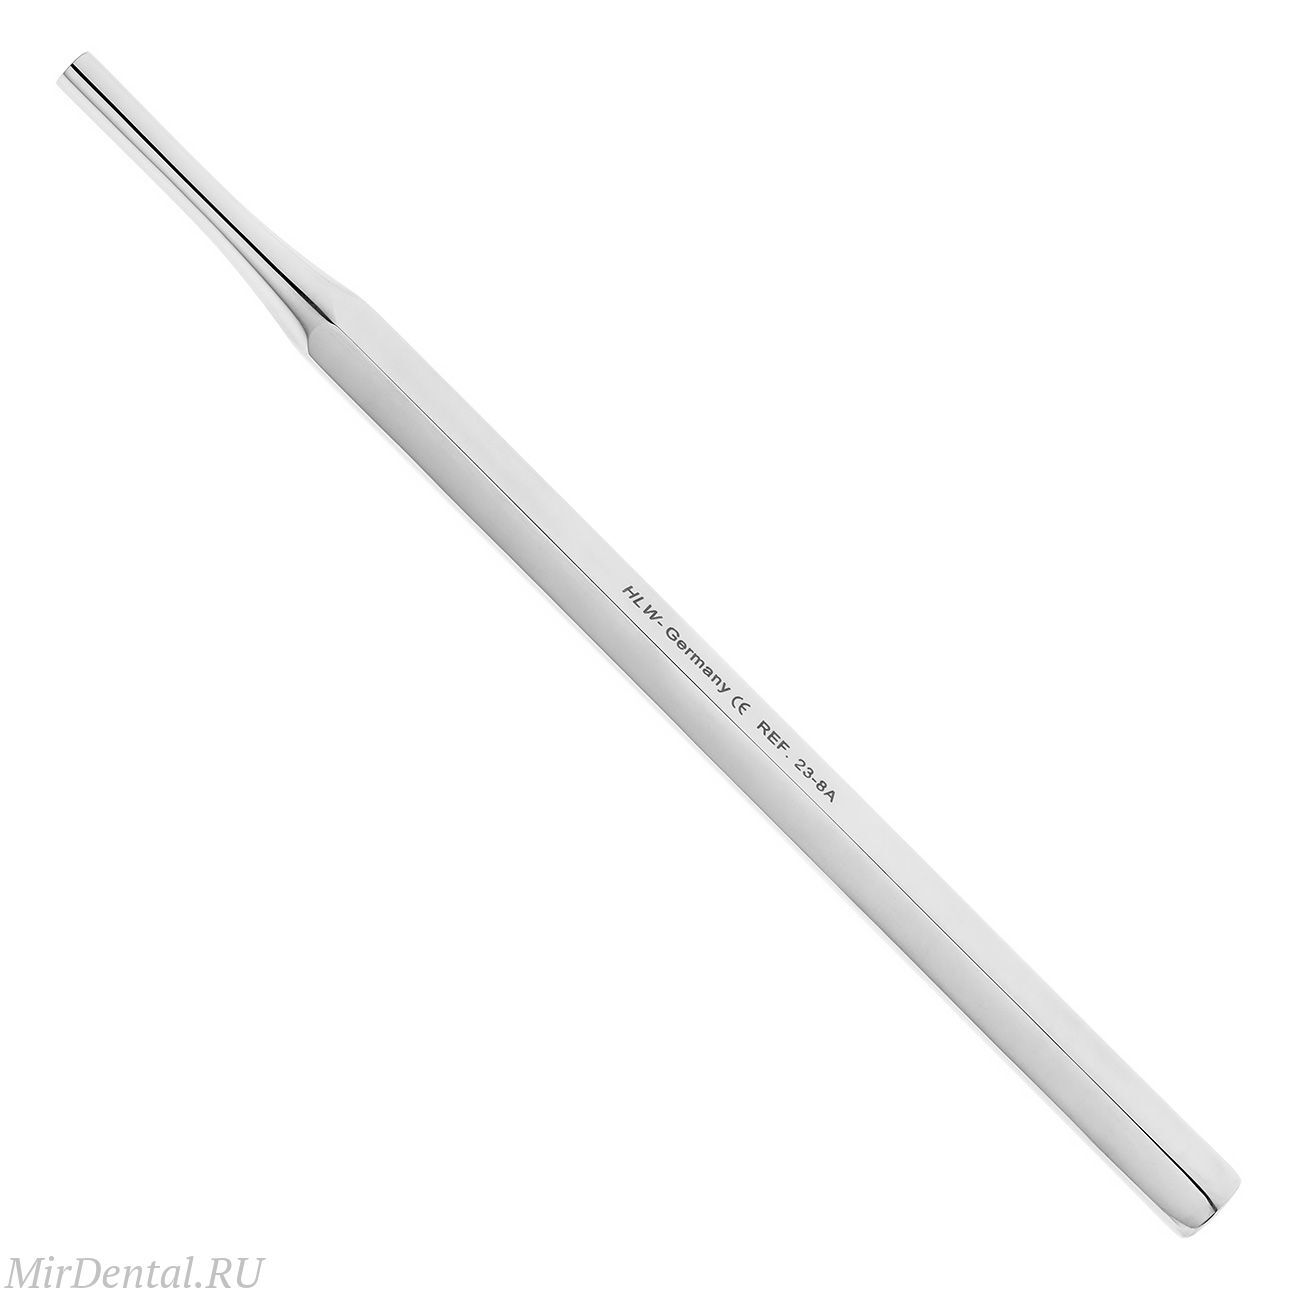 Ручка для зеркала шестигранная, полая,14 см, 23-8A*